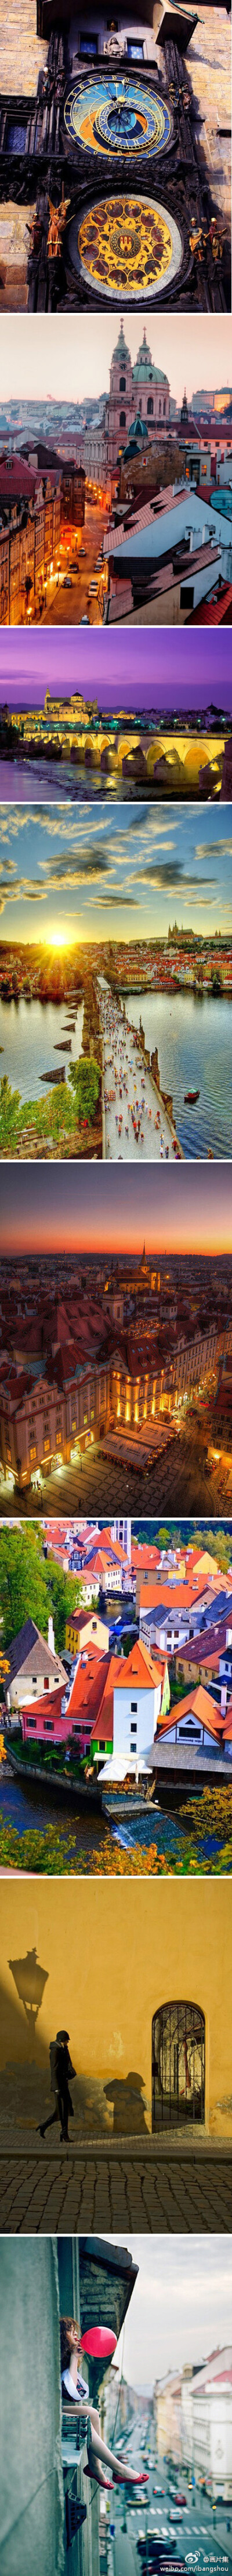 布拉格之恋。布拉格，是全世界第一个整座城市被指定为联合国世界文化遗产的城市,以其古老的历史、多姿的建筑、绚丽的色彩、丰富的文化吸引着全世界的旅游者。布拉格最吸引人的是其建筑，说它是中世纪的万国建筑博览…